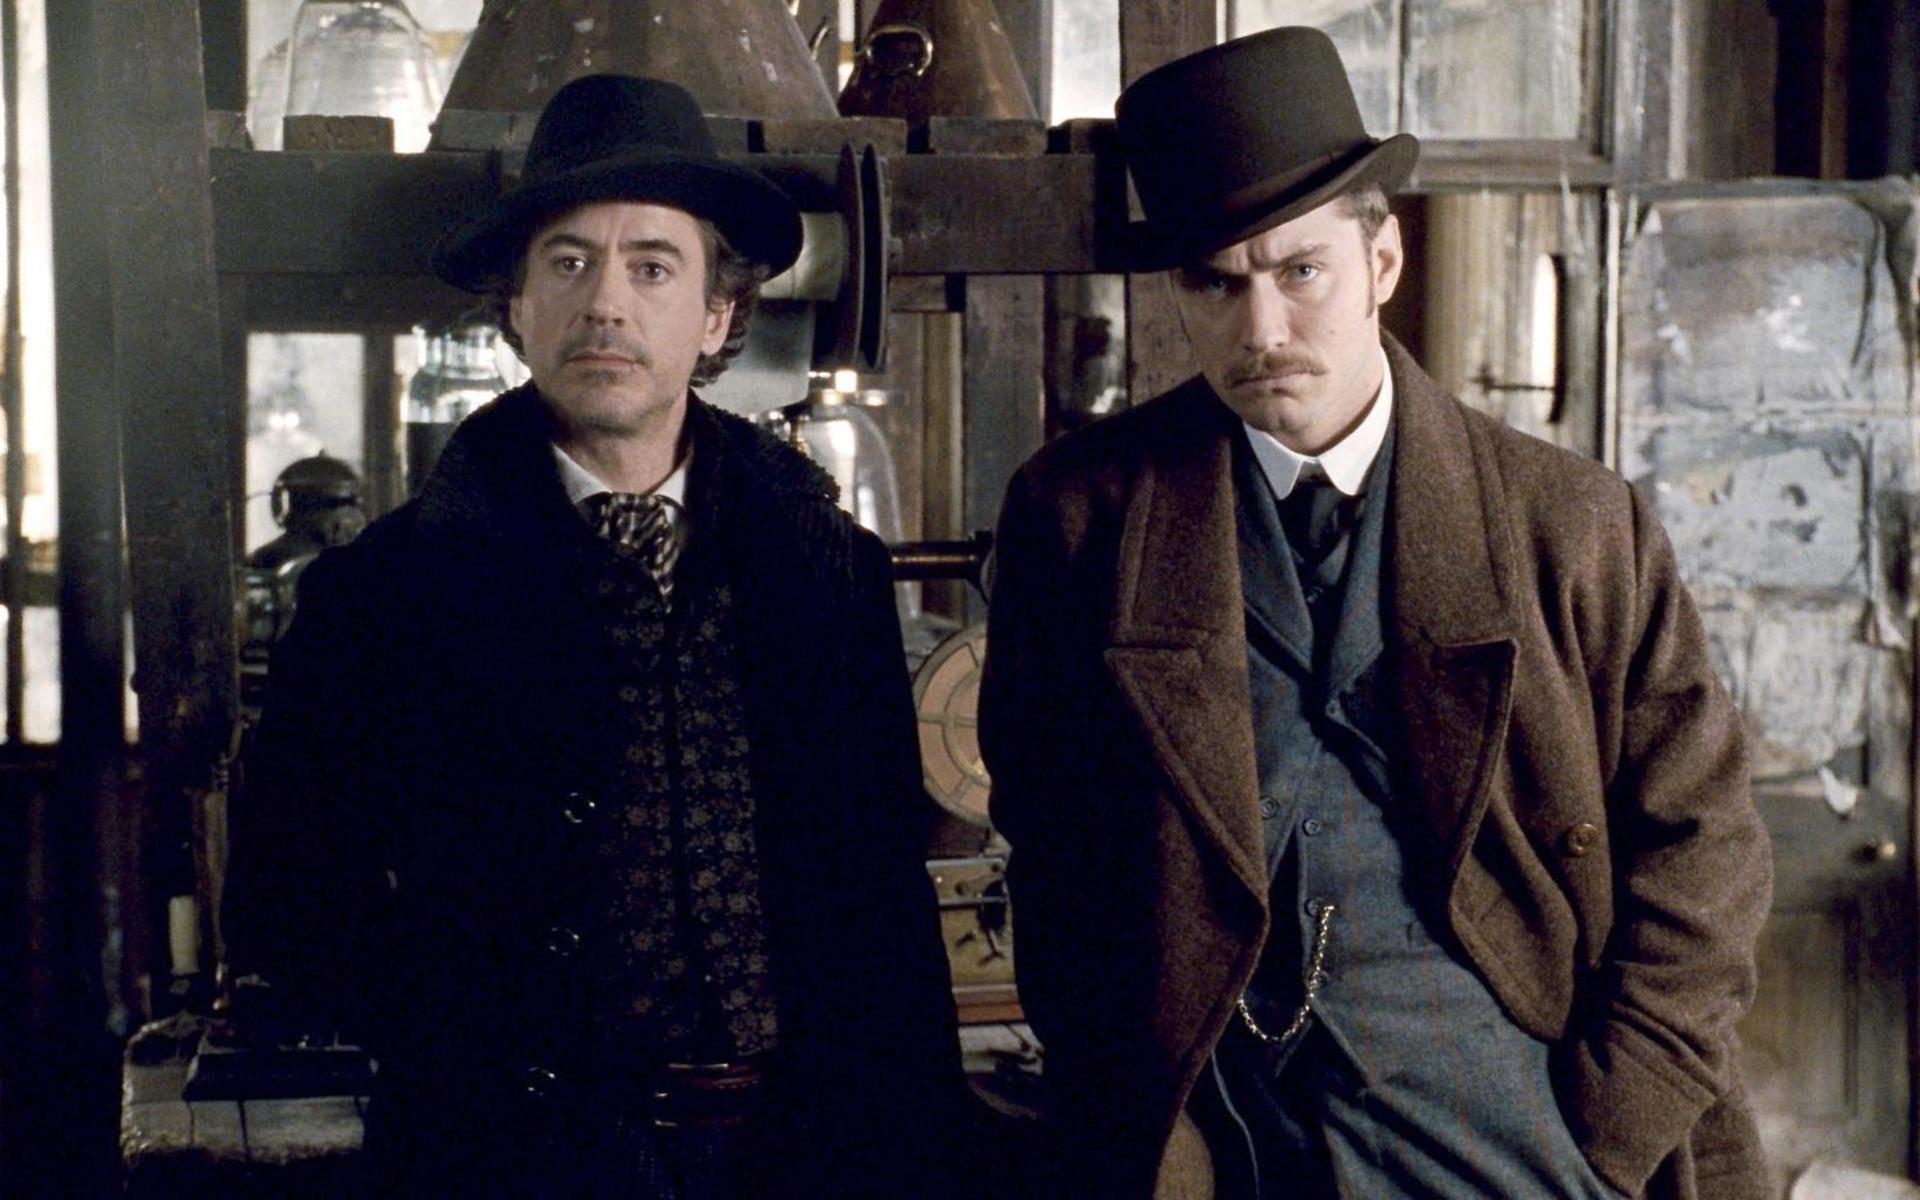 Guy Ritchie regisserade två filmer om Sherlock Holmes, 2009 och 2011. I huvudrollerna syntes Robert Downey Jr och Jude Law.